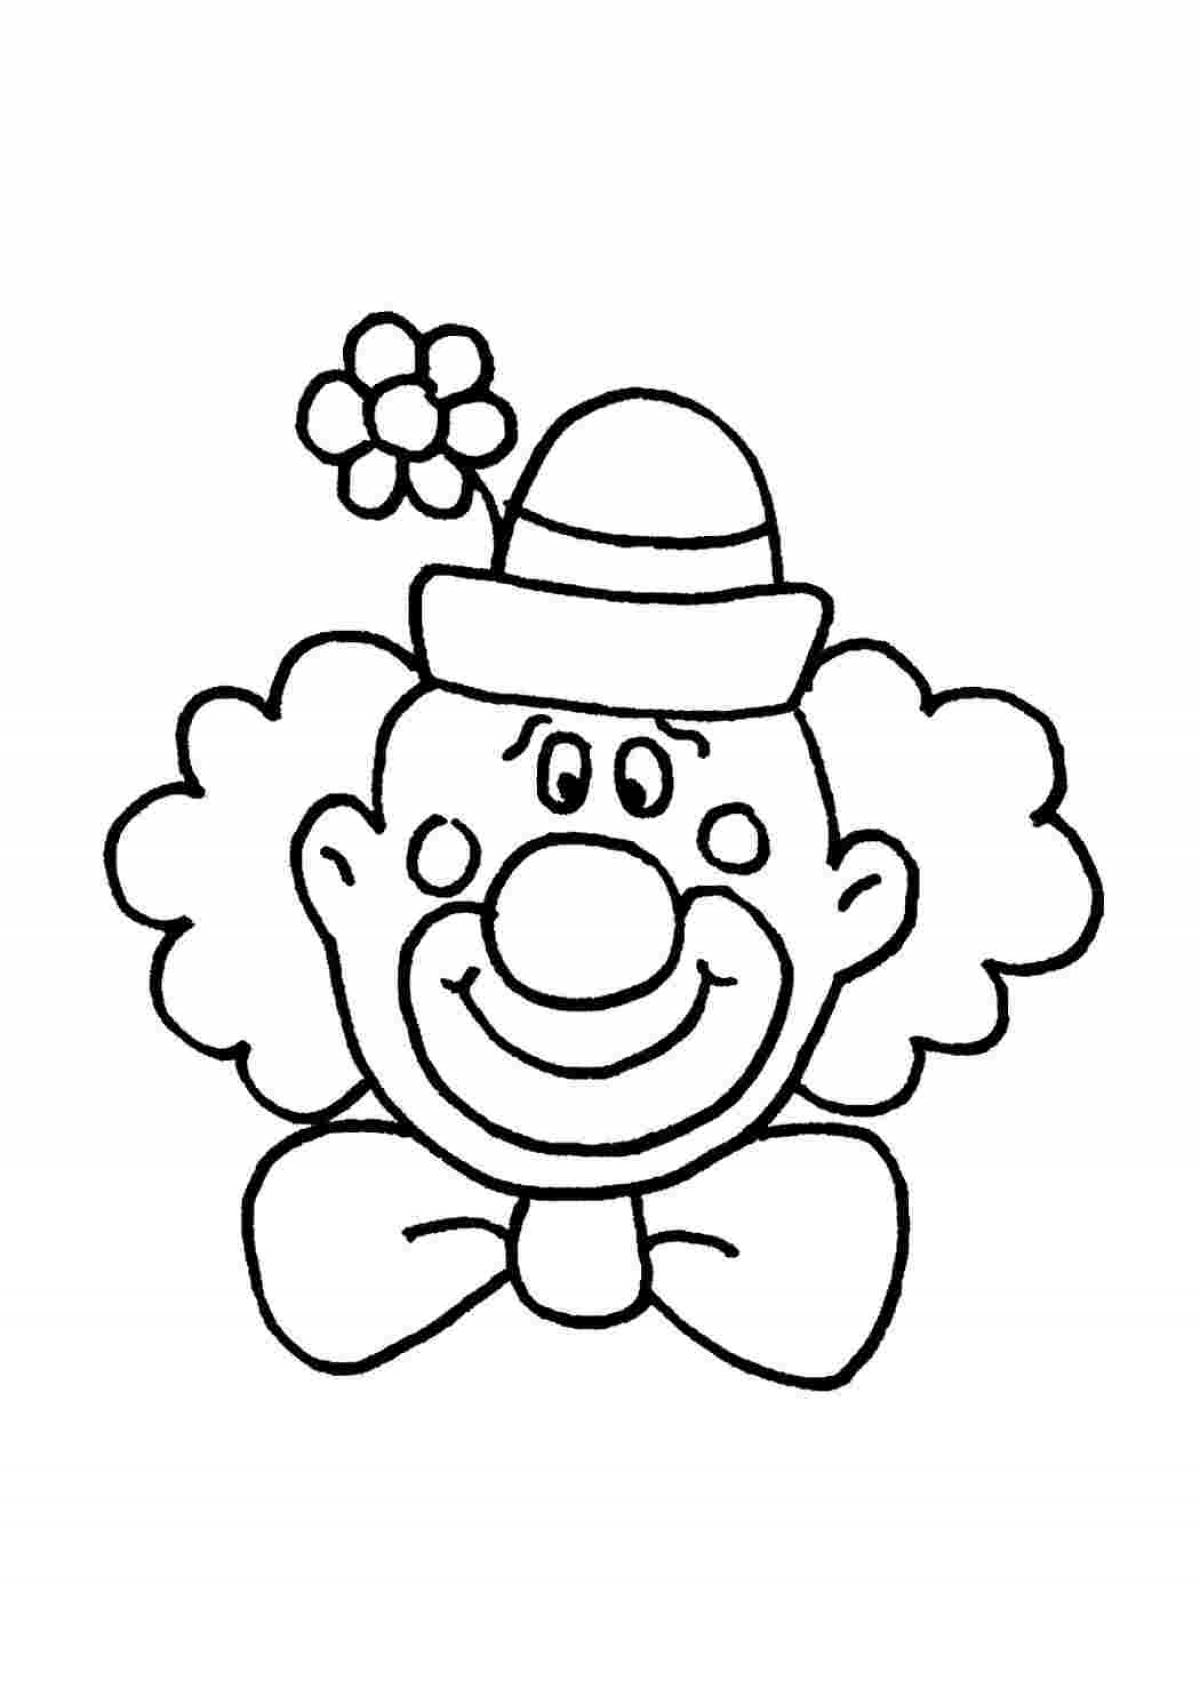 Клоуны раскраска для детей 5 лет. Клоун раскраска. Клоун раскраска для малышей. Клоун раскраска для детей. Клоун для раскрашивания детям.